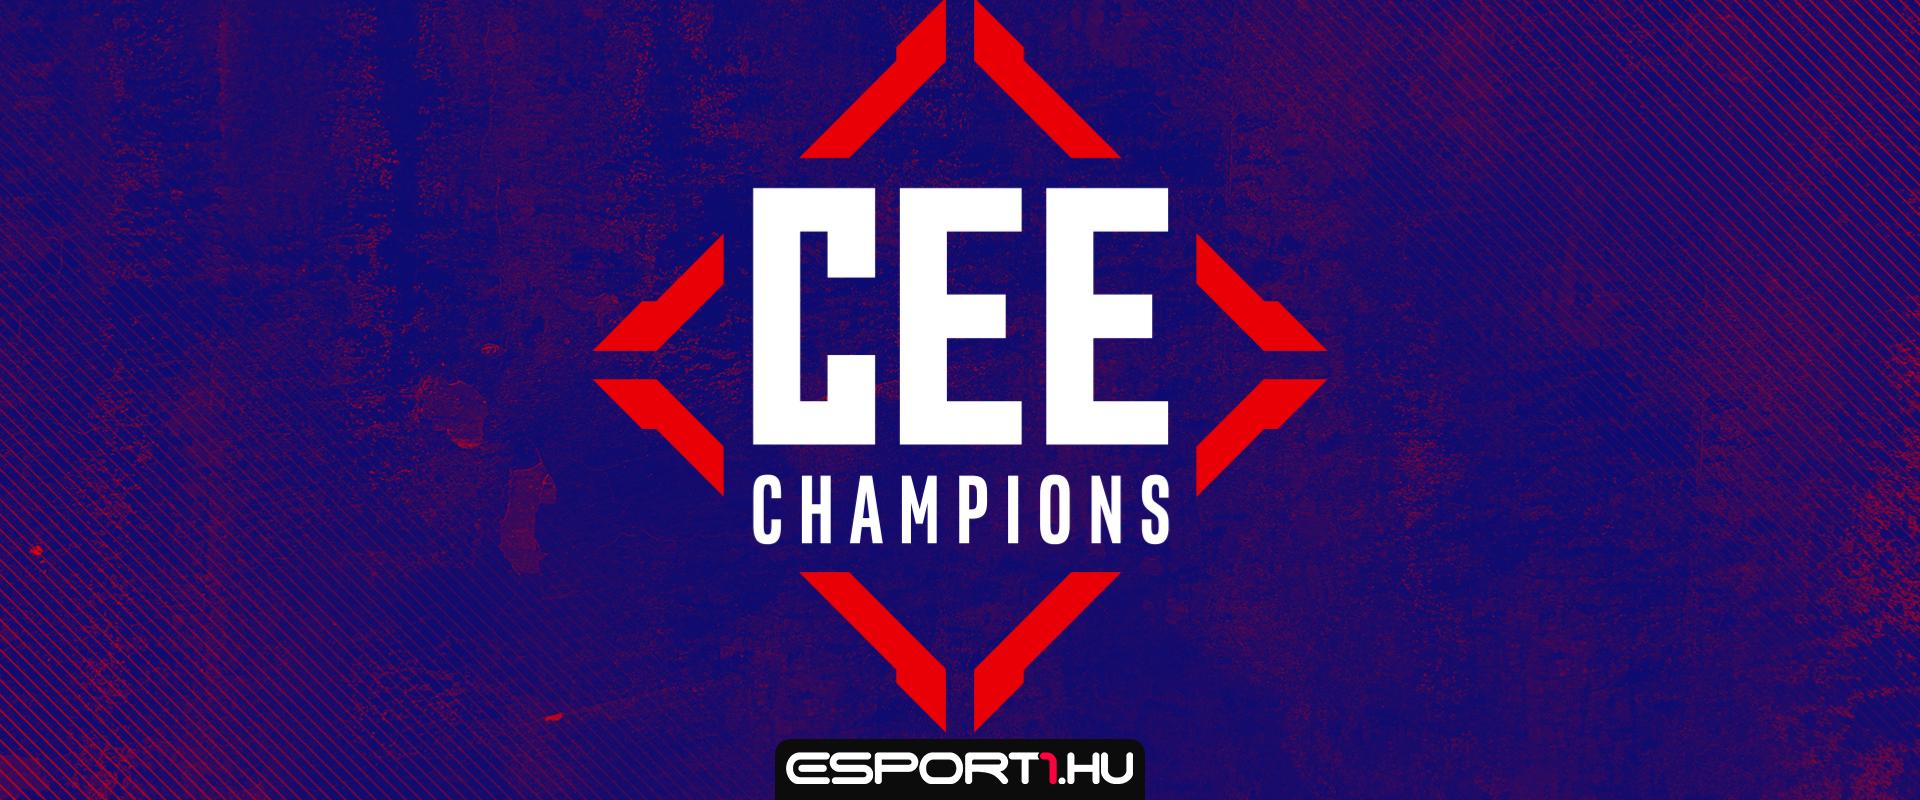 Nevezz a nemzeti selejtezőre és vegyél részt a 30 000 dolláros CEE Champions versenyén!